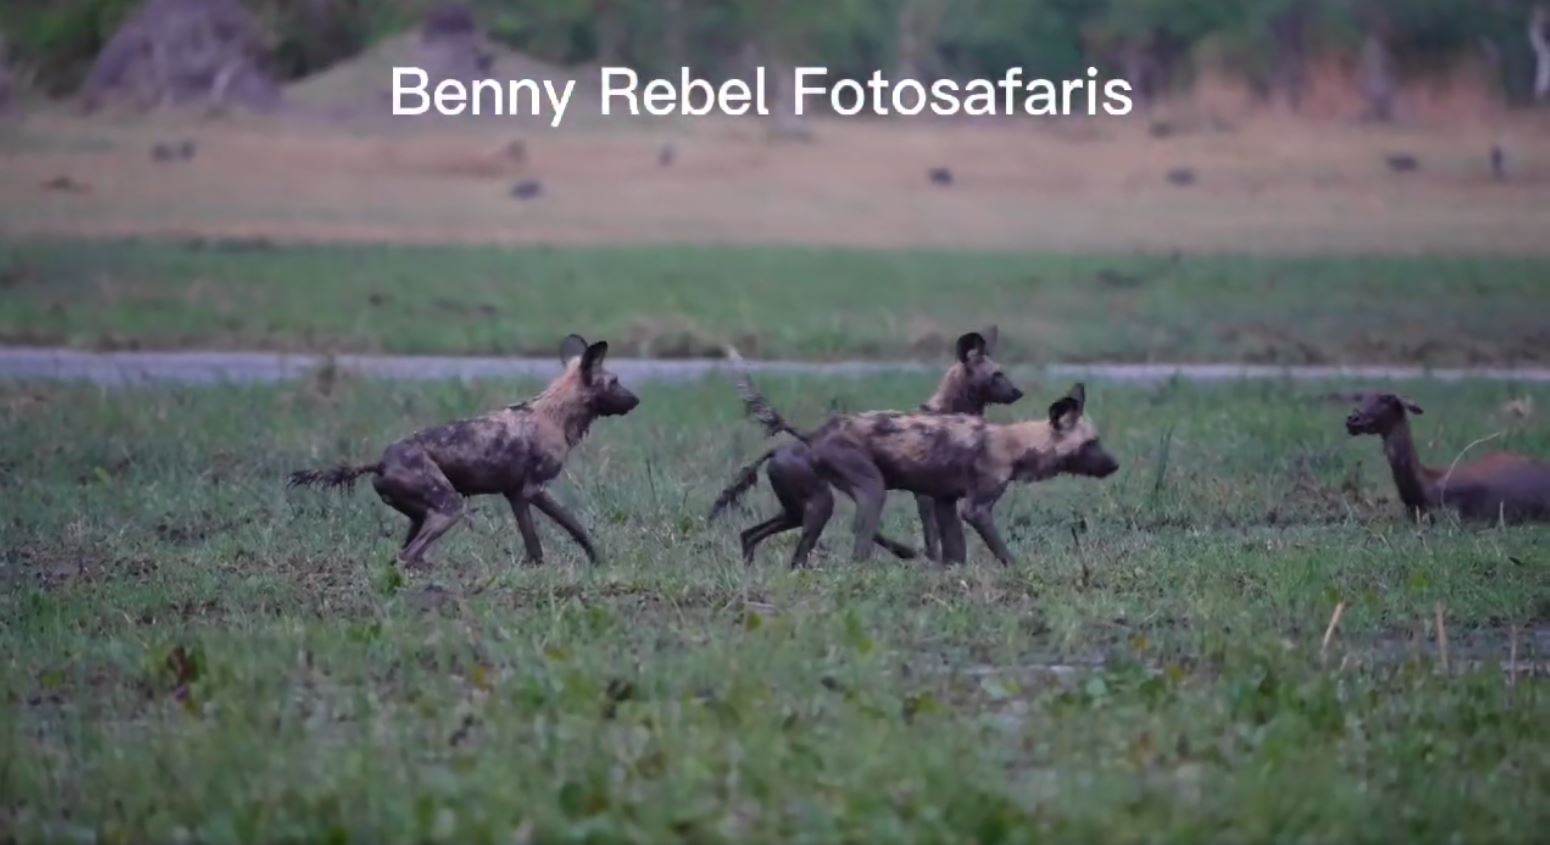 Wir finden fünf afrikanischen Wildhunde, die unterwegs sind, um ihre nächsten Mahlzeit zu finden. Fotoreise durch Botswana.